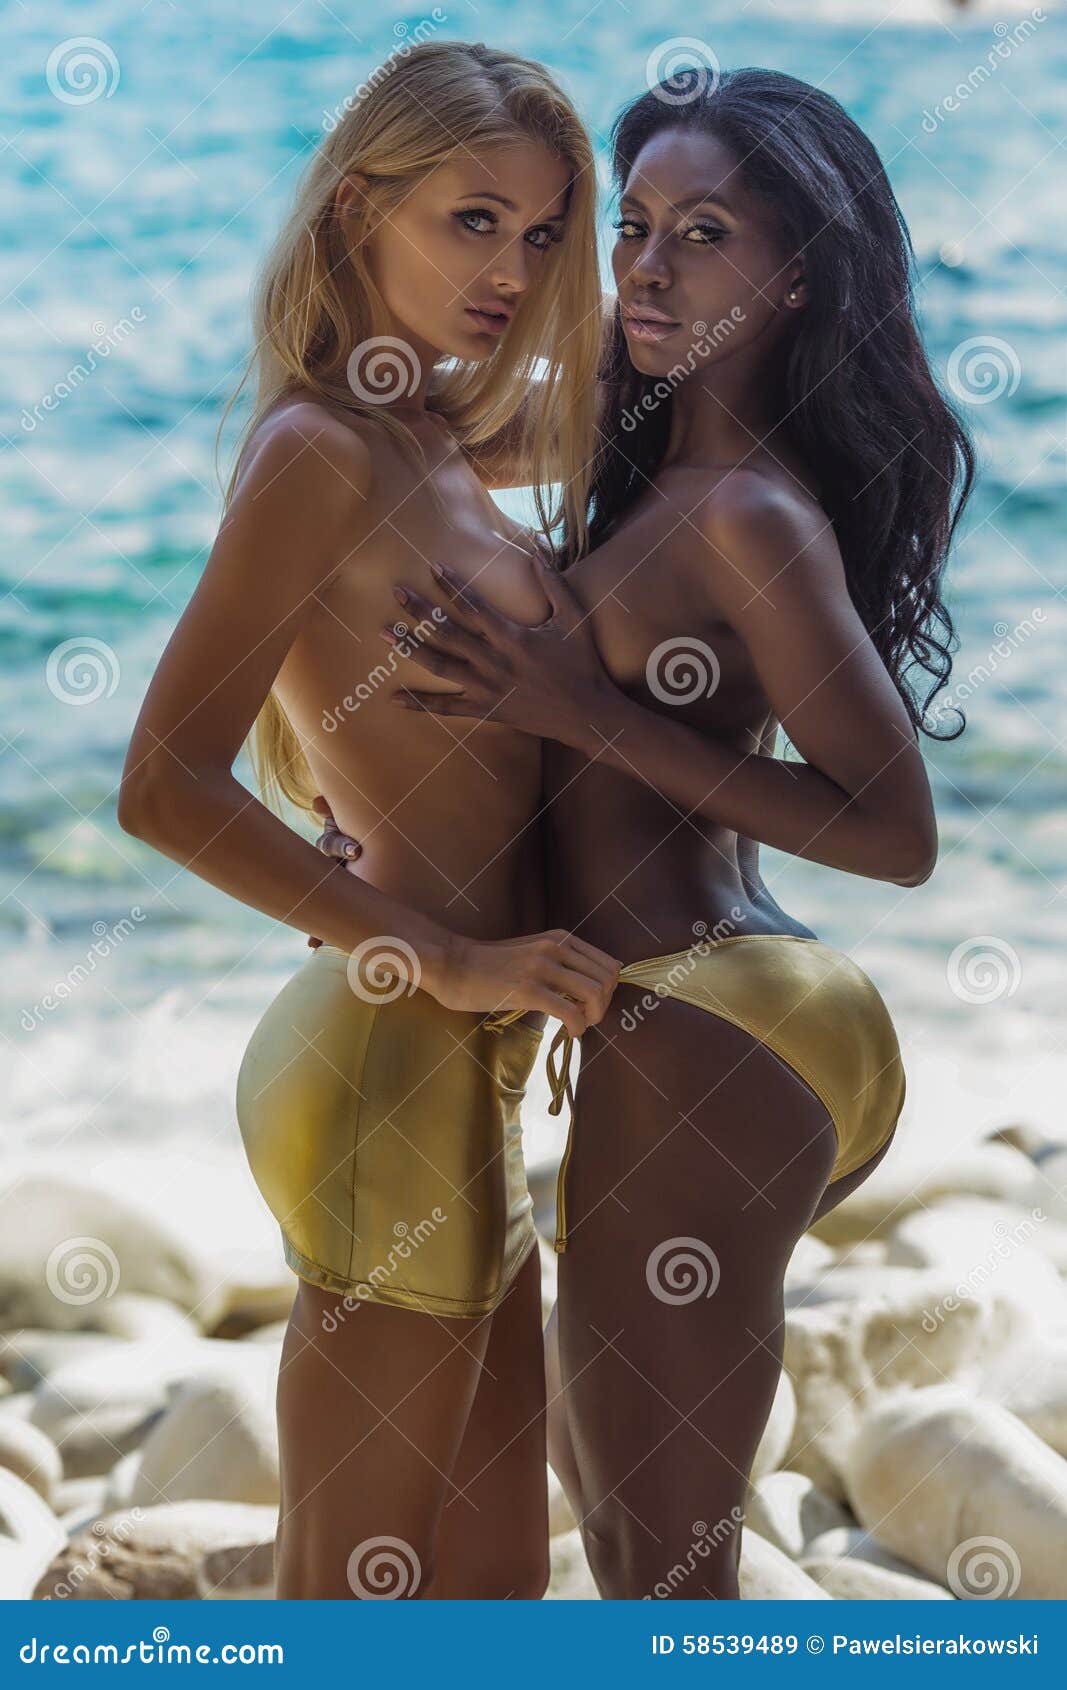 Ladies nude on beach